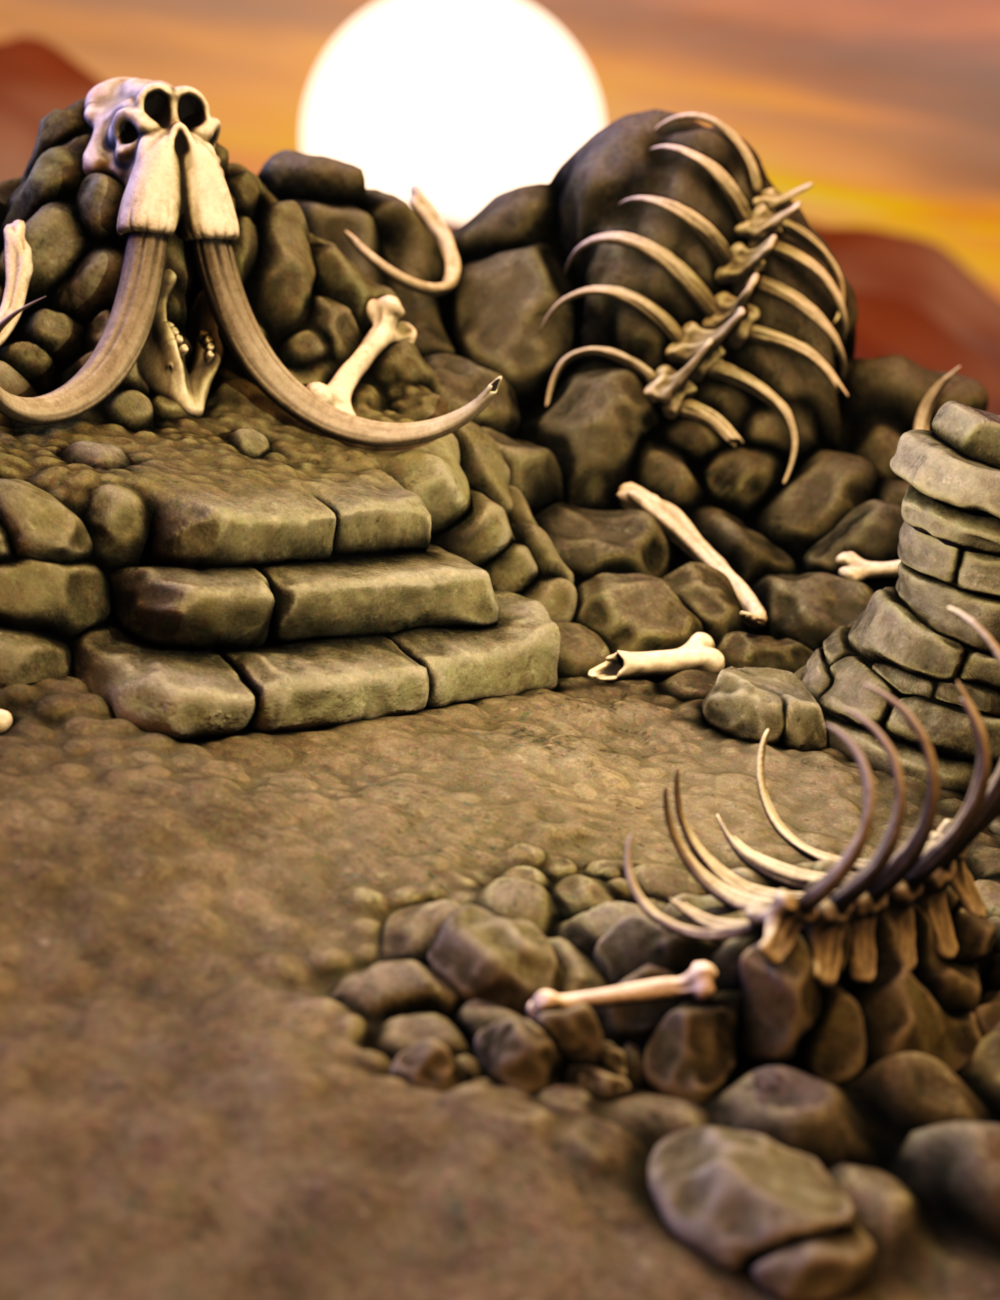 The Boneyard by: Troglo3D, 3D Models by Daz 3D